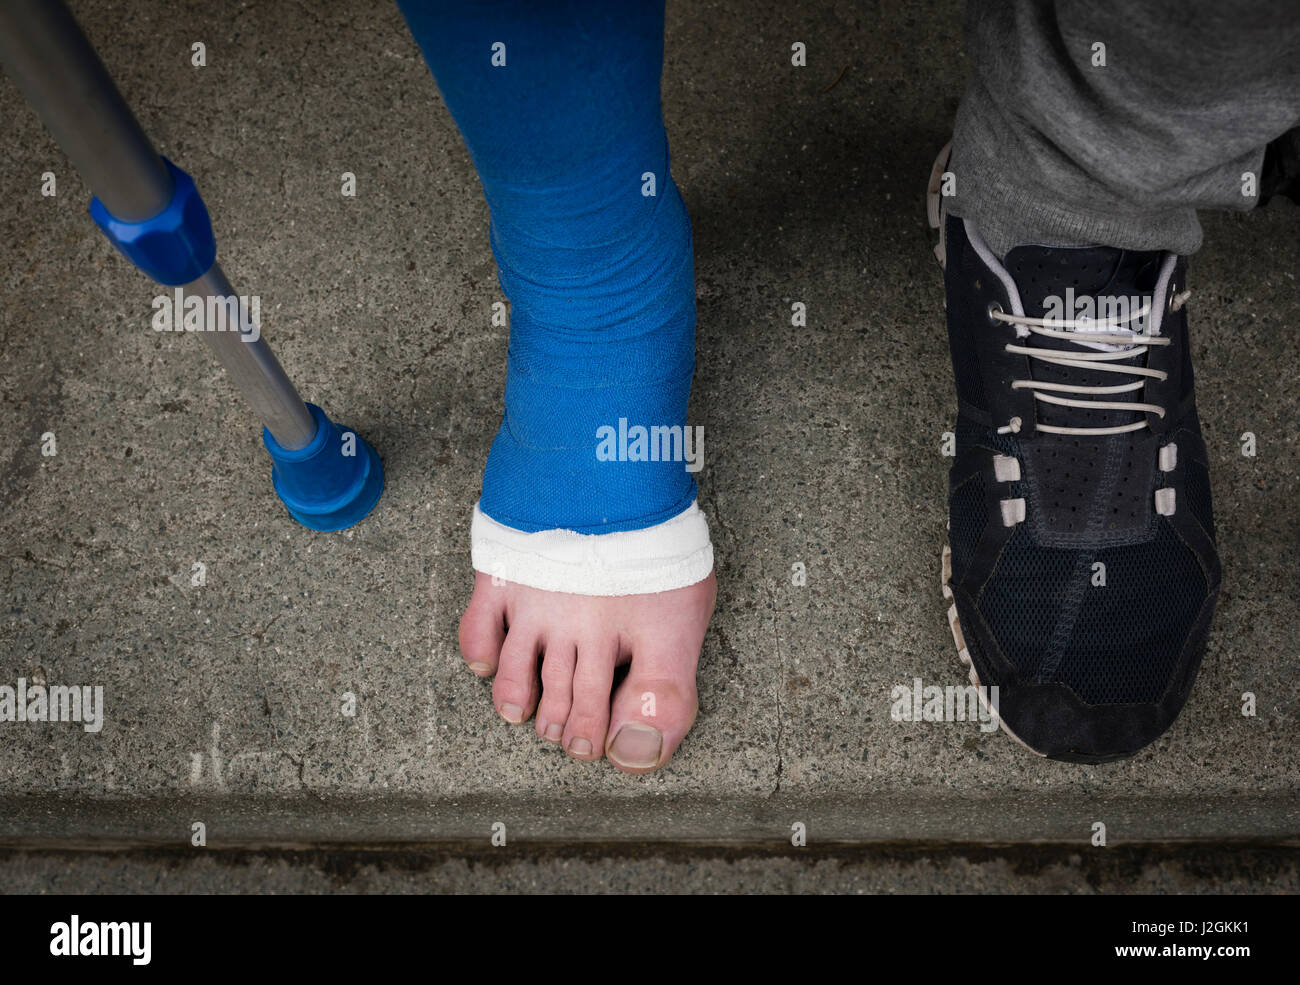 An der steinernen Tür außerhalb ein Appartement-Haus steht ein junger  Erwachsener mit Krücken und seinen Fuß in Gips bandagiert. Barfuß Zehen  kleben Stockfotografie - Alamy